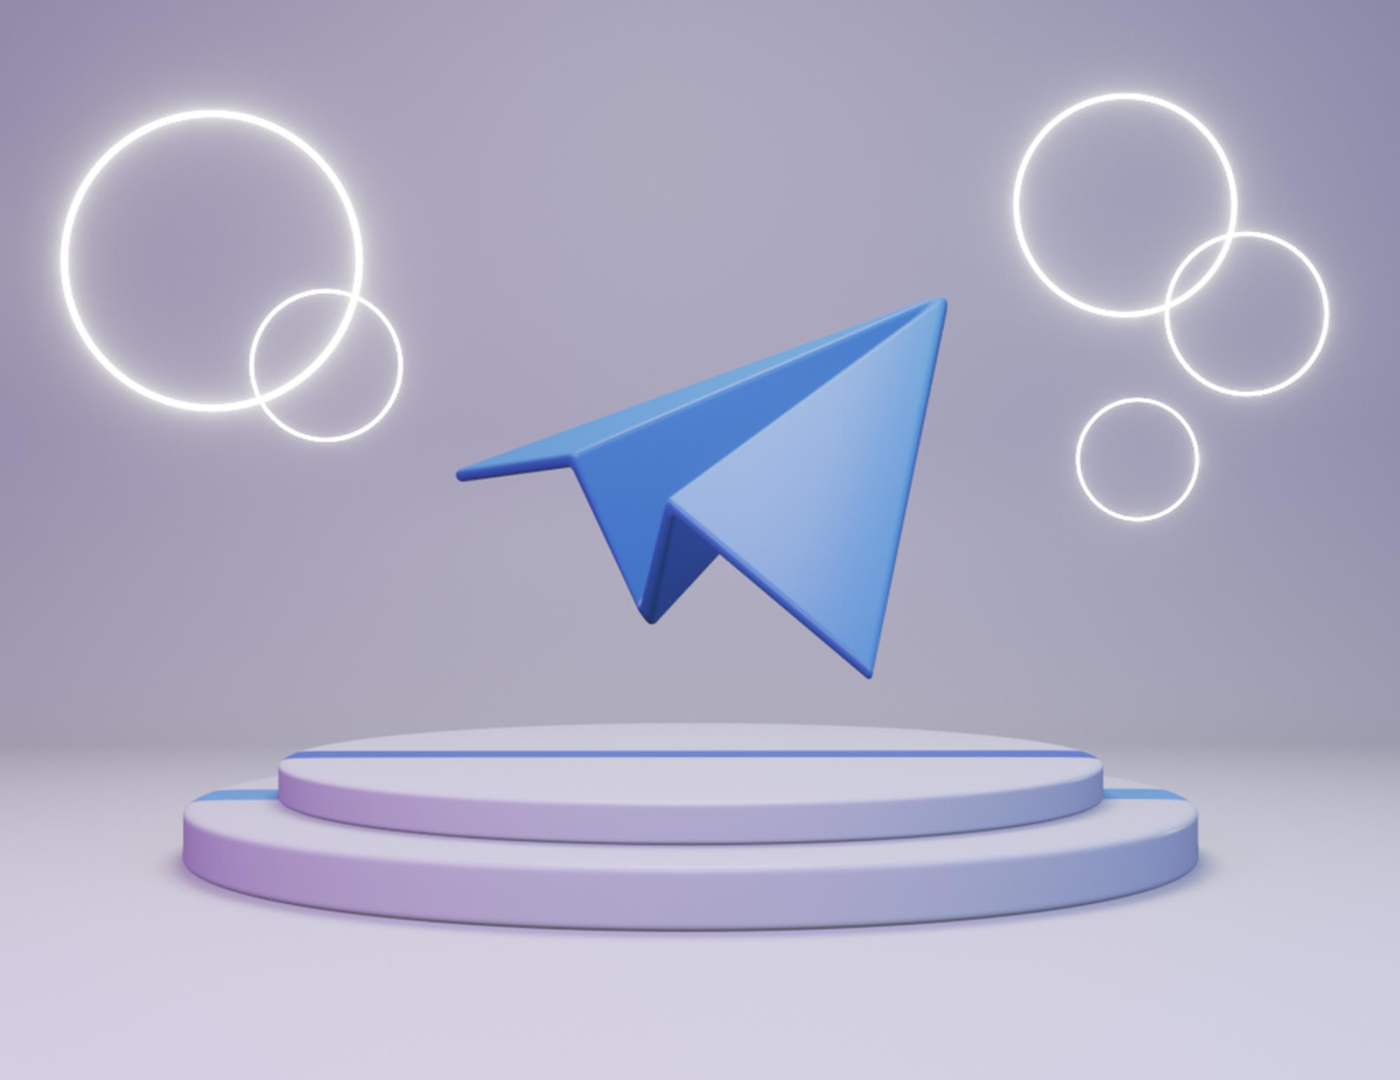 Como realizar o registro em massa no Telegram